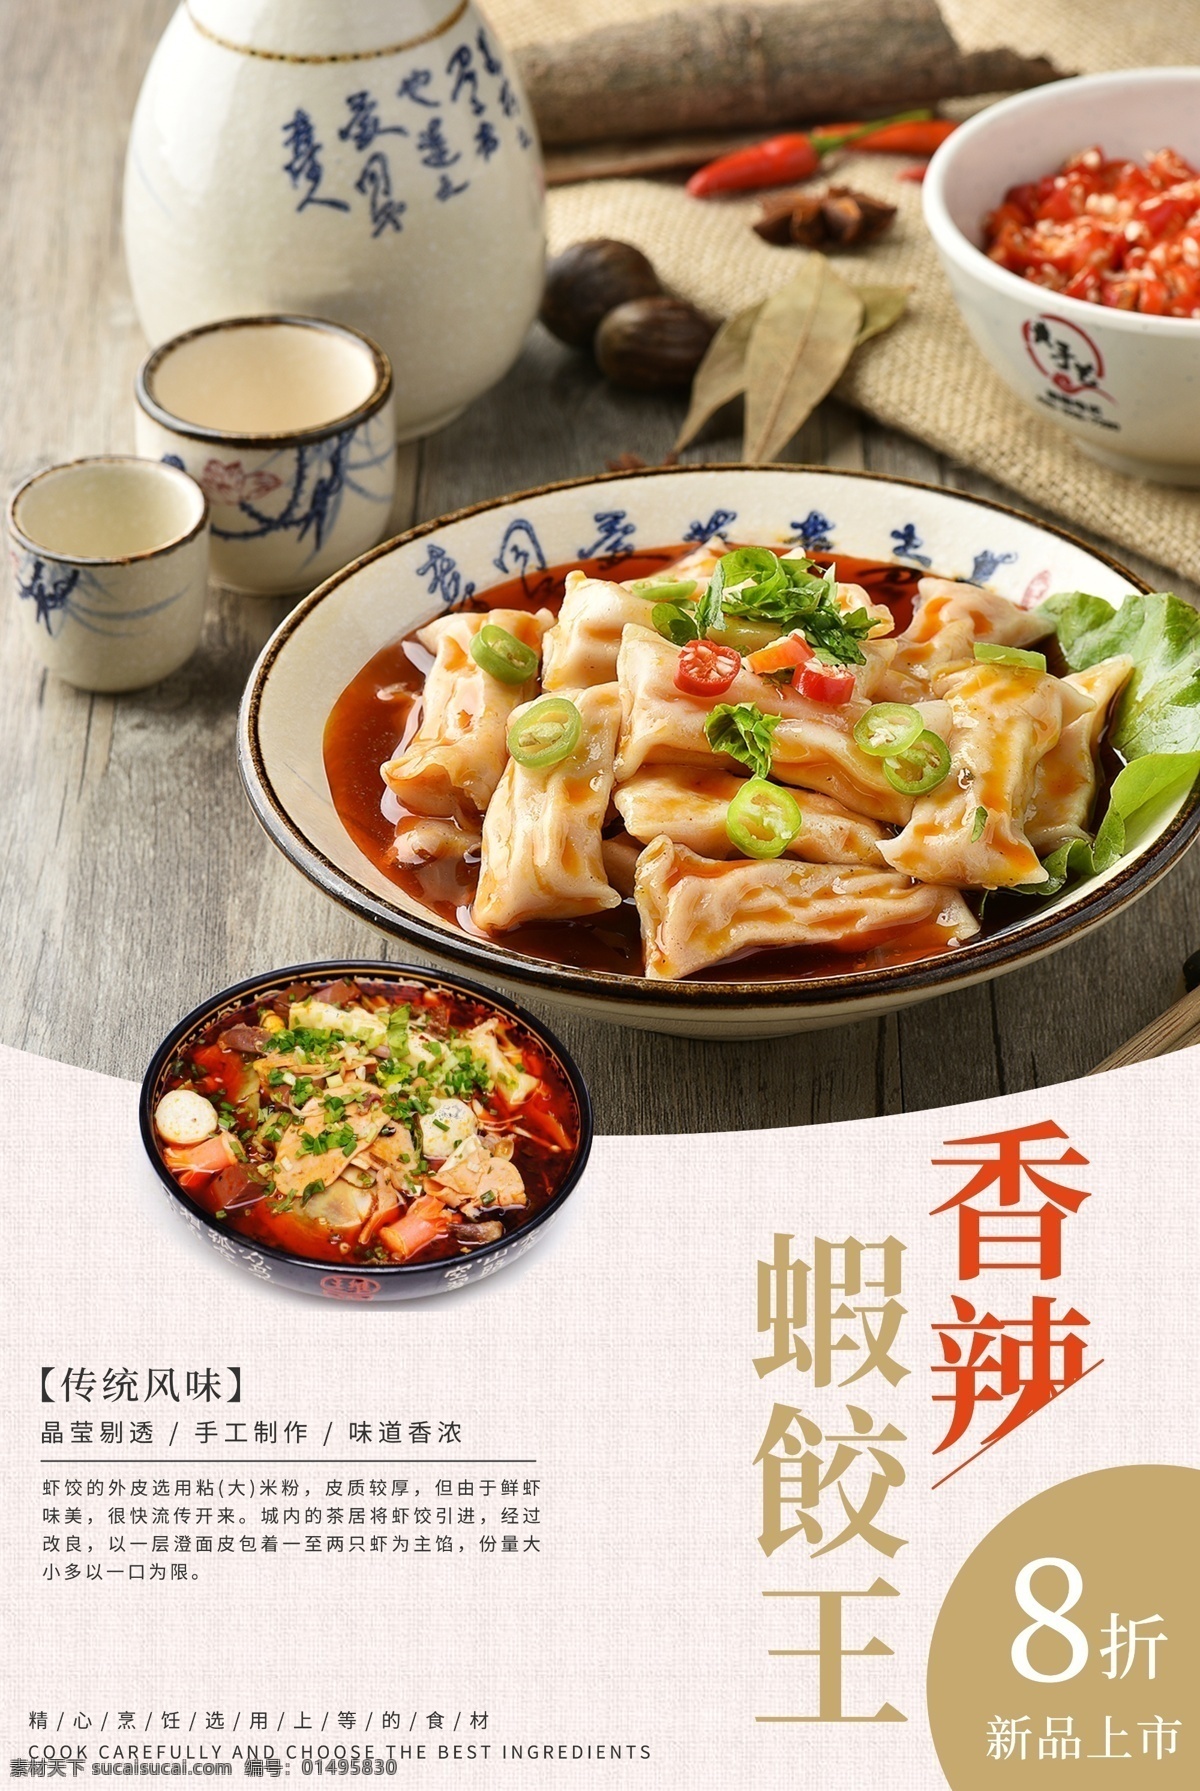 香辣 虾 饺 王 美食 海报 虾饺 新品上市 美味 传统风味 美食餐饮